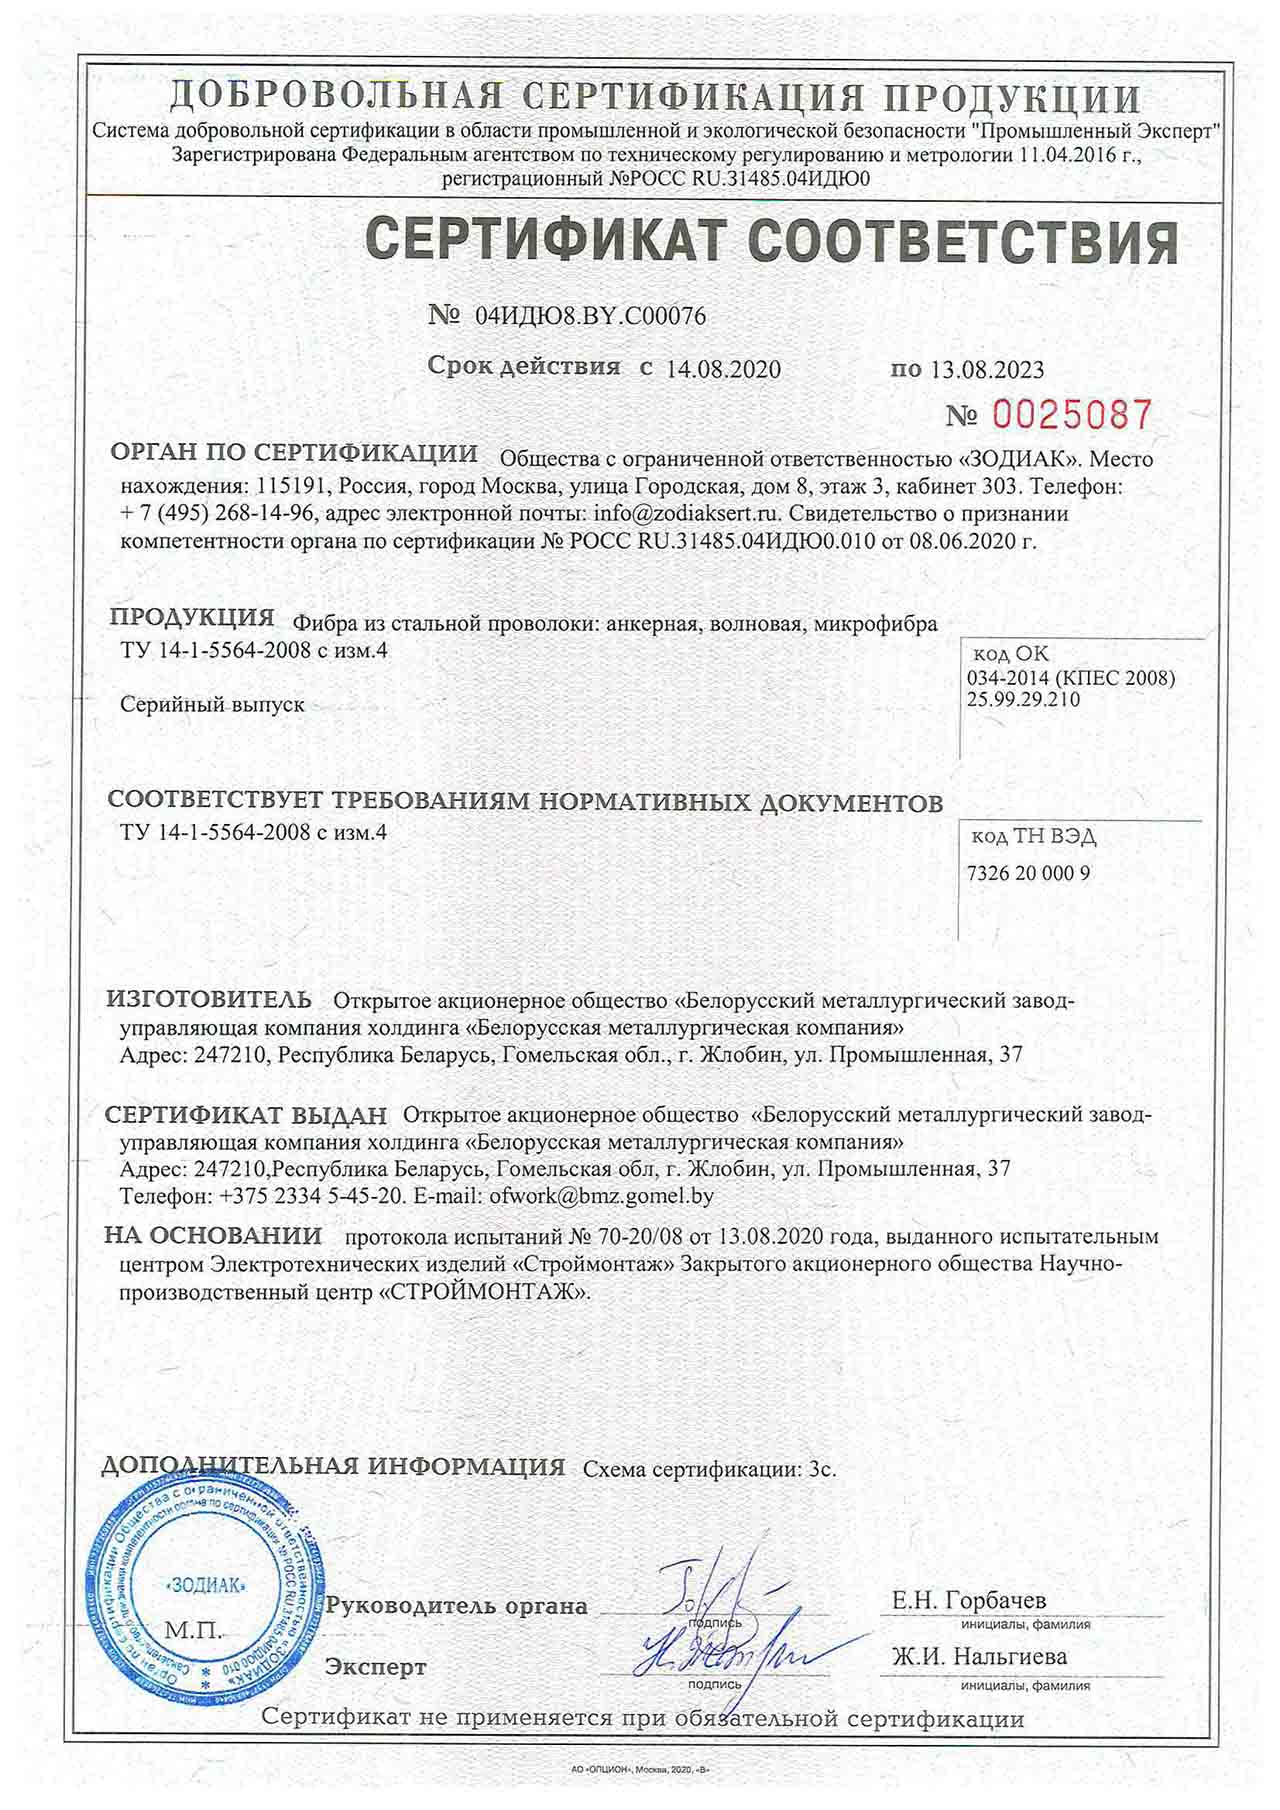 Сертификат соответствия № 04ИДЮ8.BY.С00076 SERCONS/ООО «ЗОДИАК» (РФ) на производство фибры из стальной проволоки: анкерной, волновой, микрофибры по требованиям ТУ 14-1-5564-2008 с изм.4